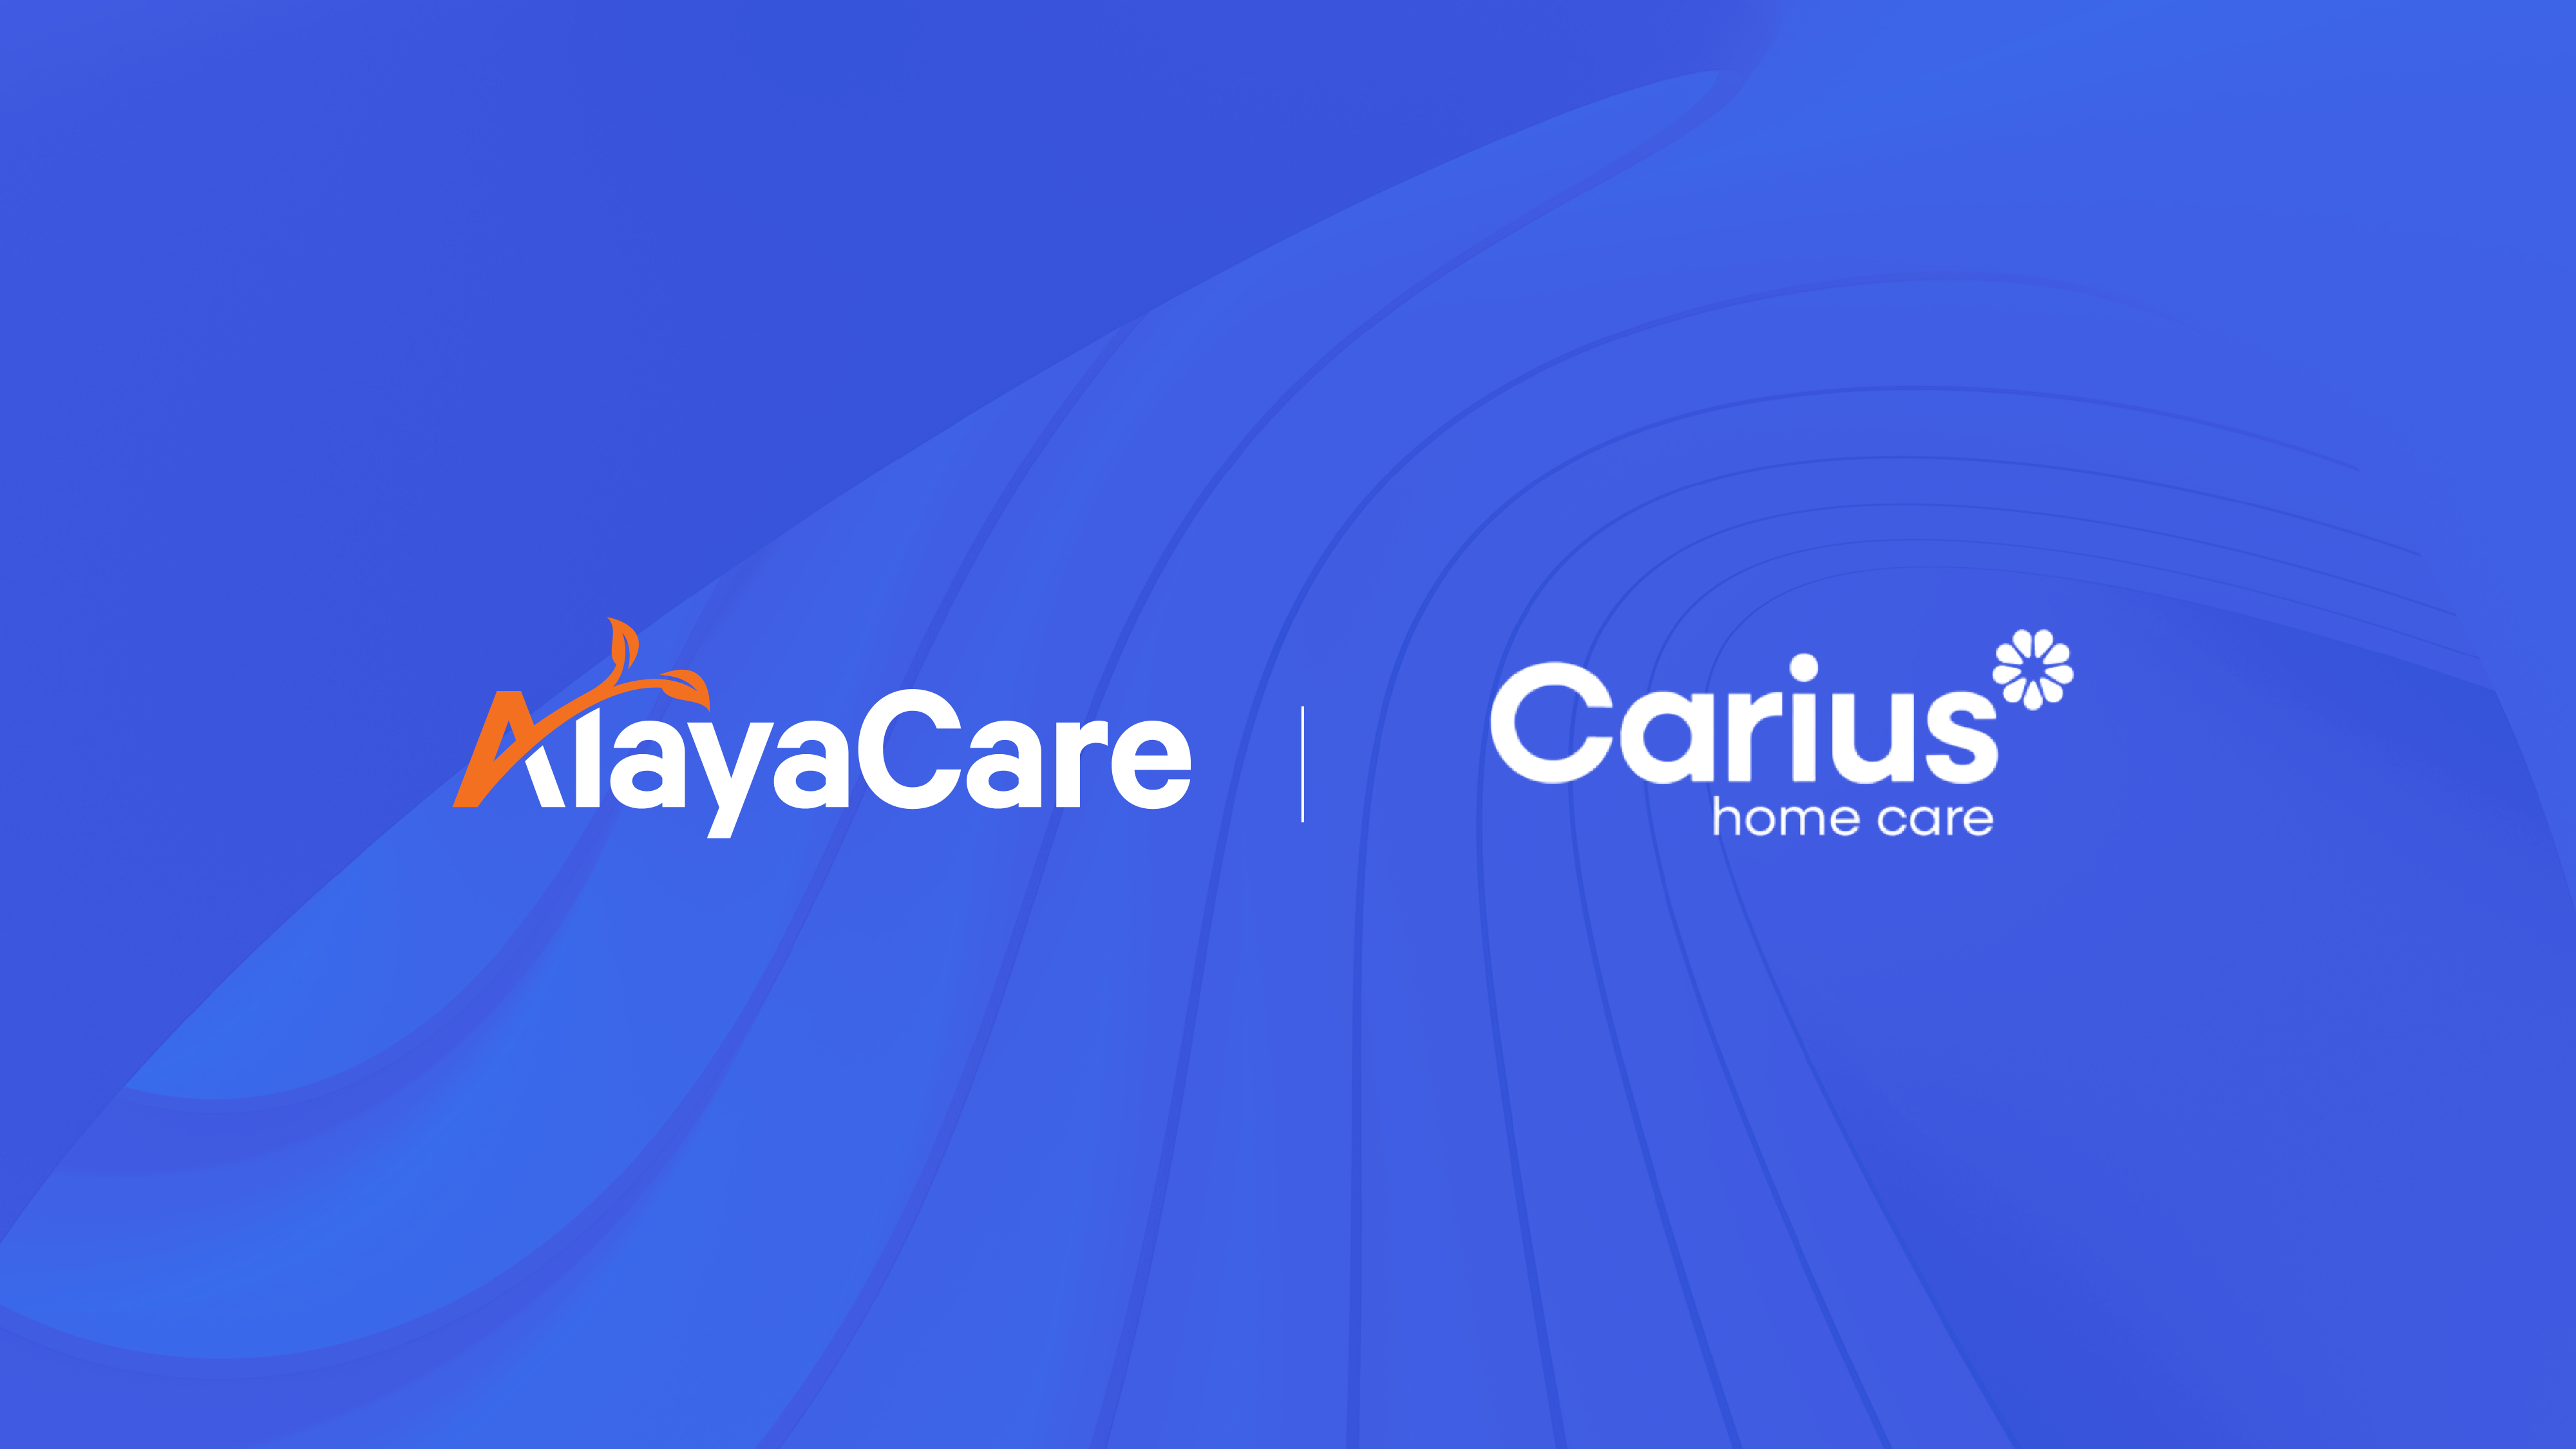 AlayaCare Carius Home Care Partnership